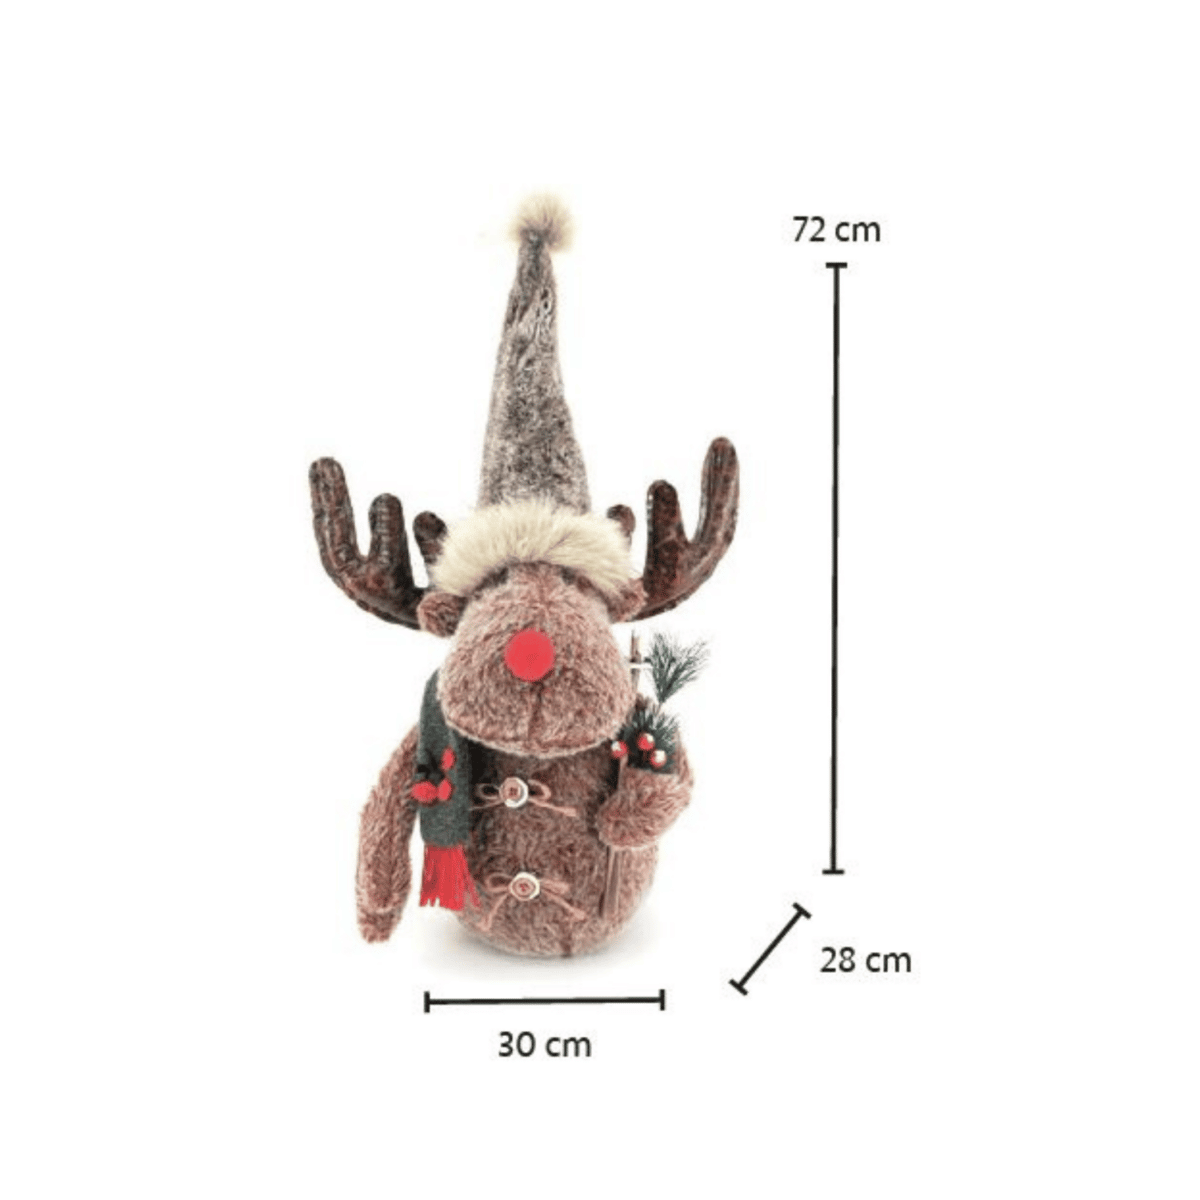 renna-carmen-72-cm-pupazzi-natale-decorazioni-natalizie-misure